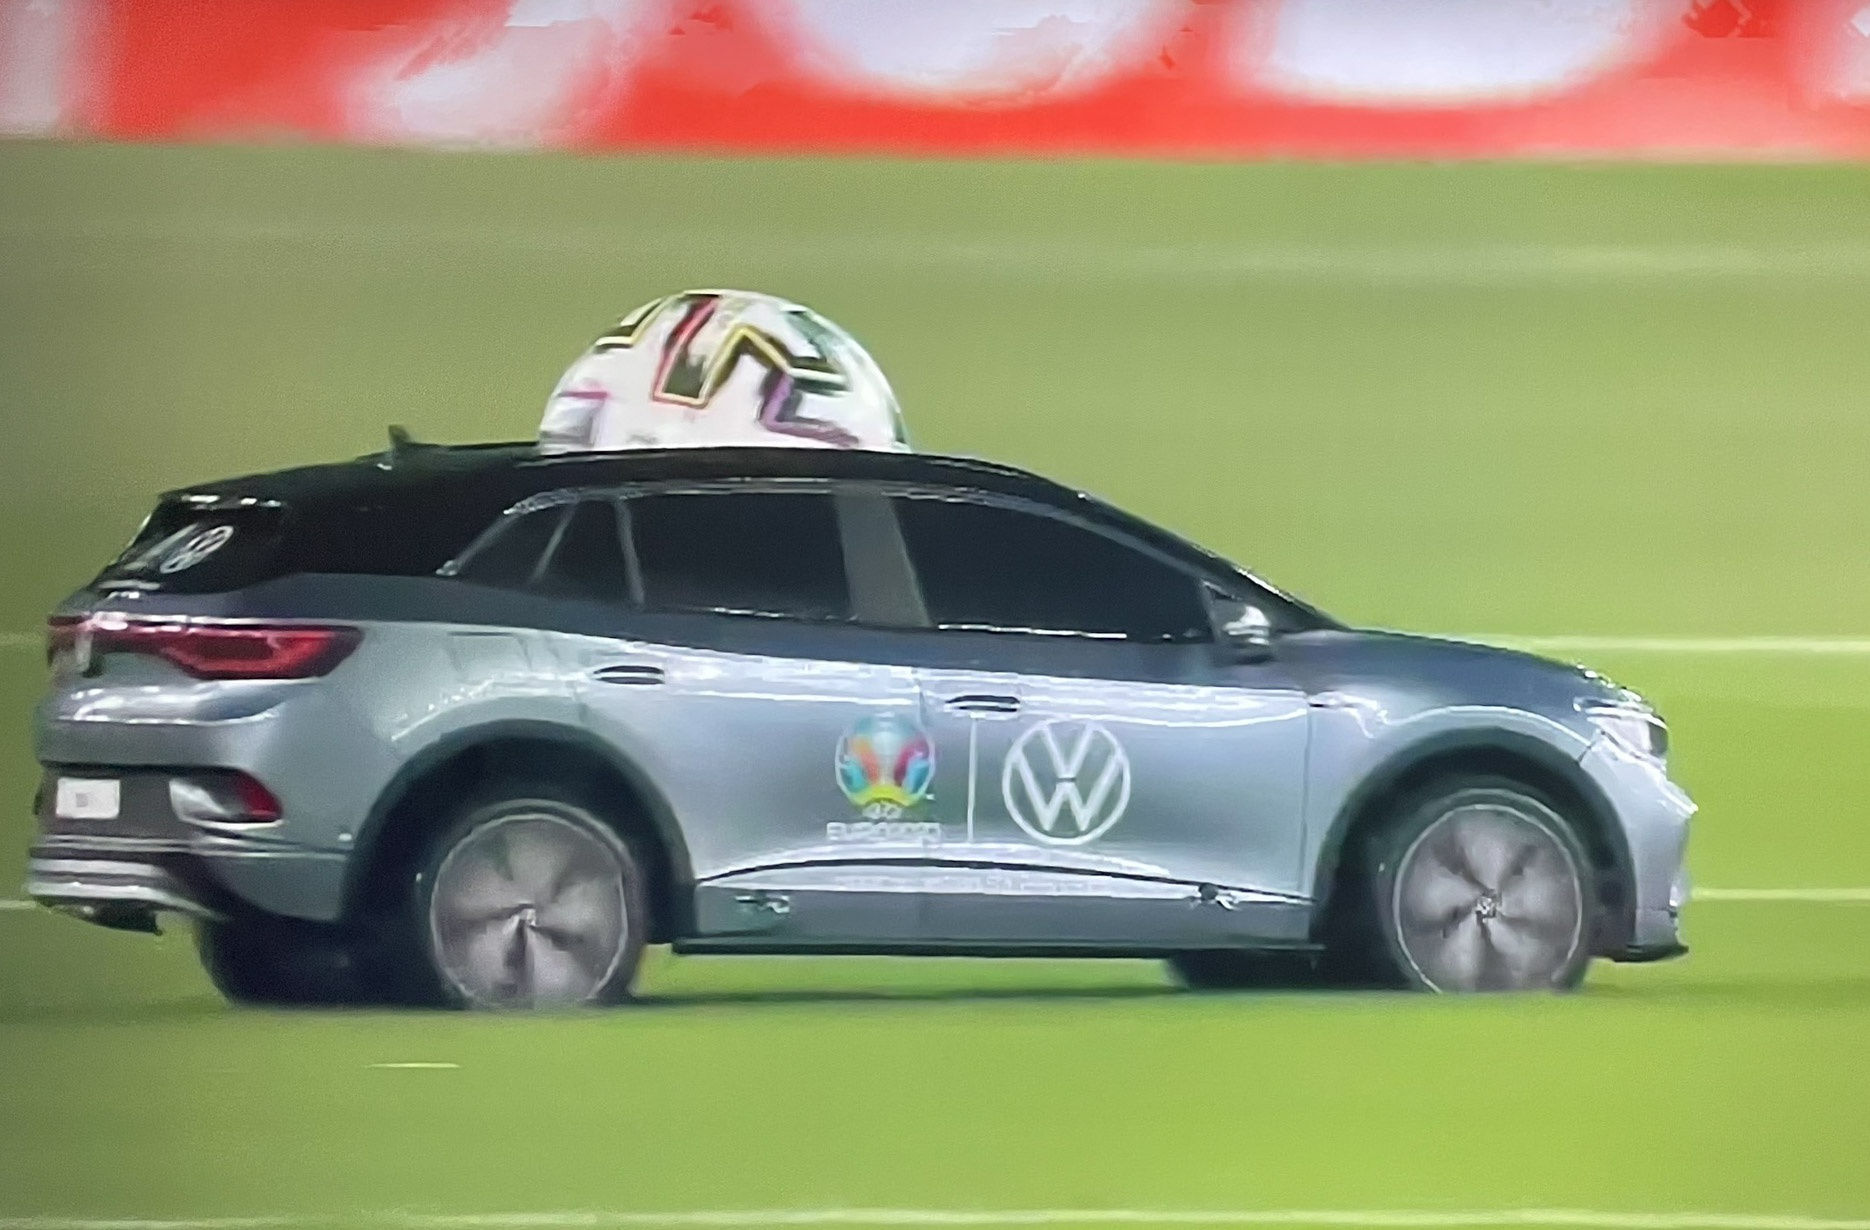 Xe cho bong cua Volkswagen tai Euro 2020 anh 1